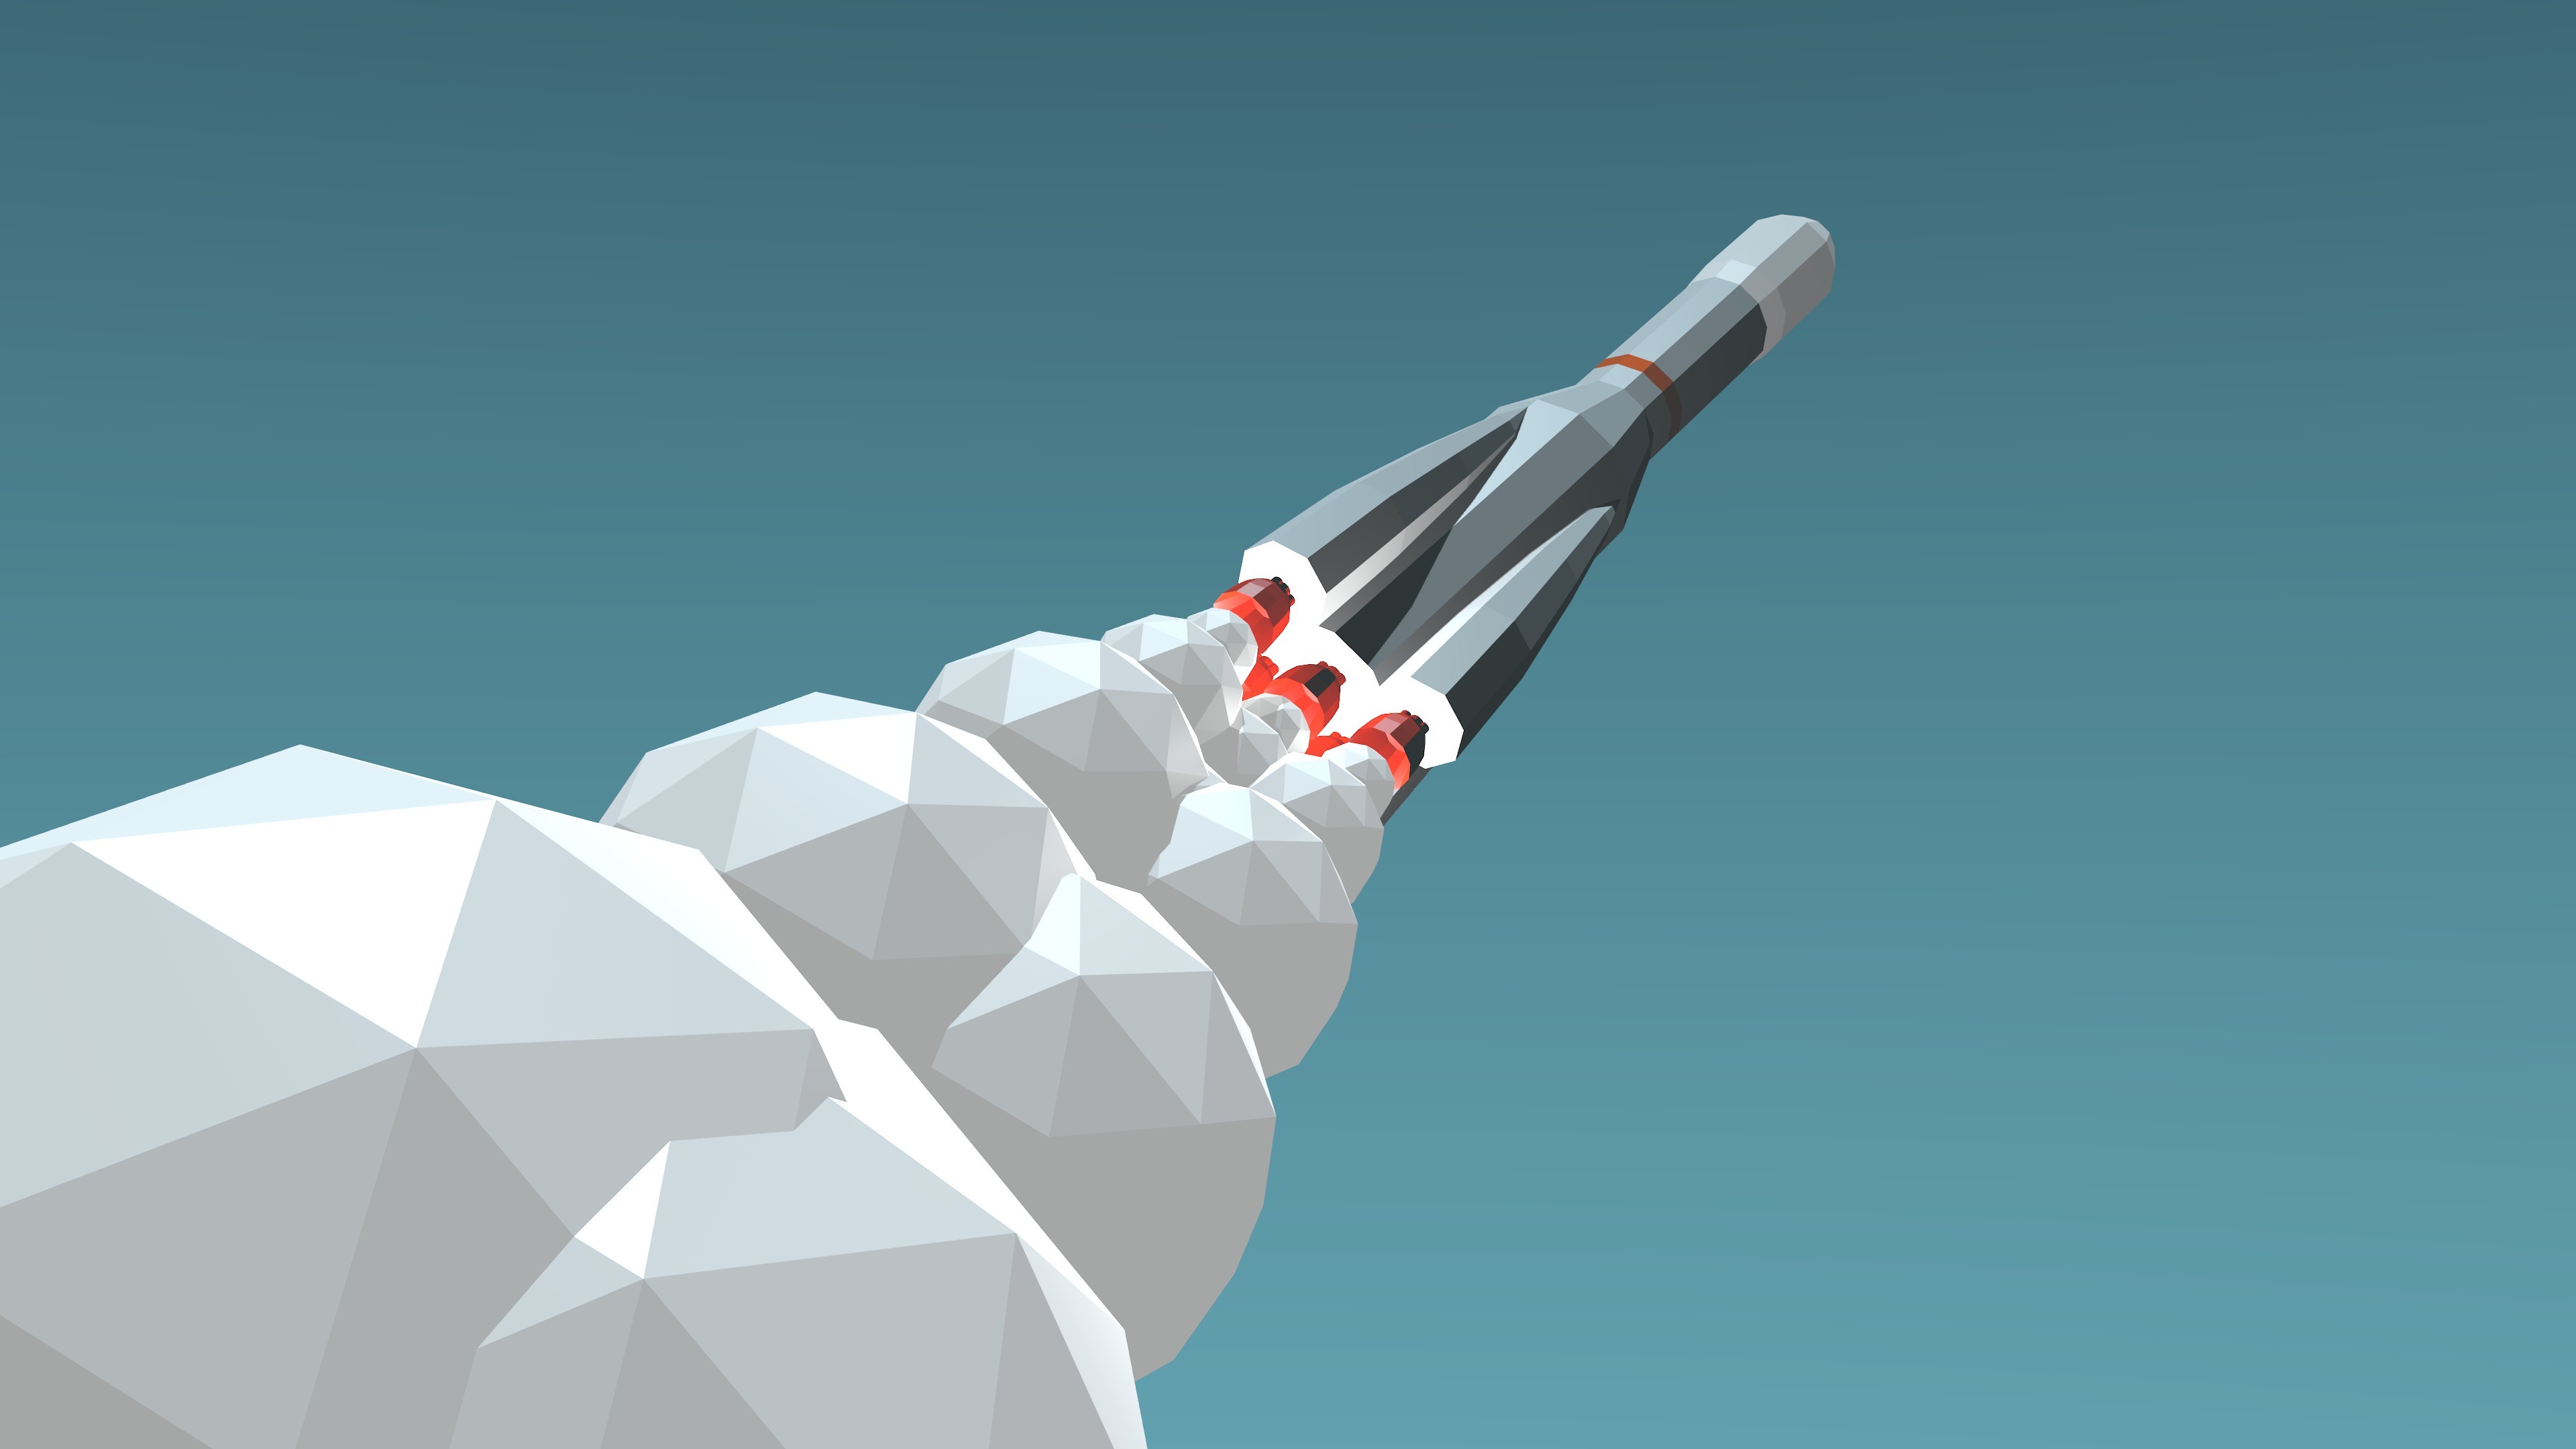 1000 Free Rocket  Spaceship Images  Pixabay